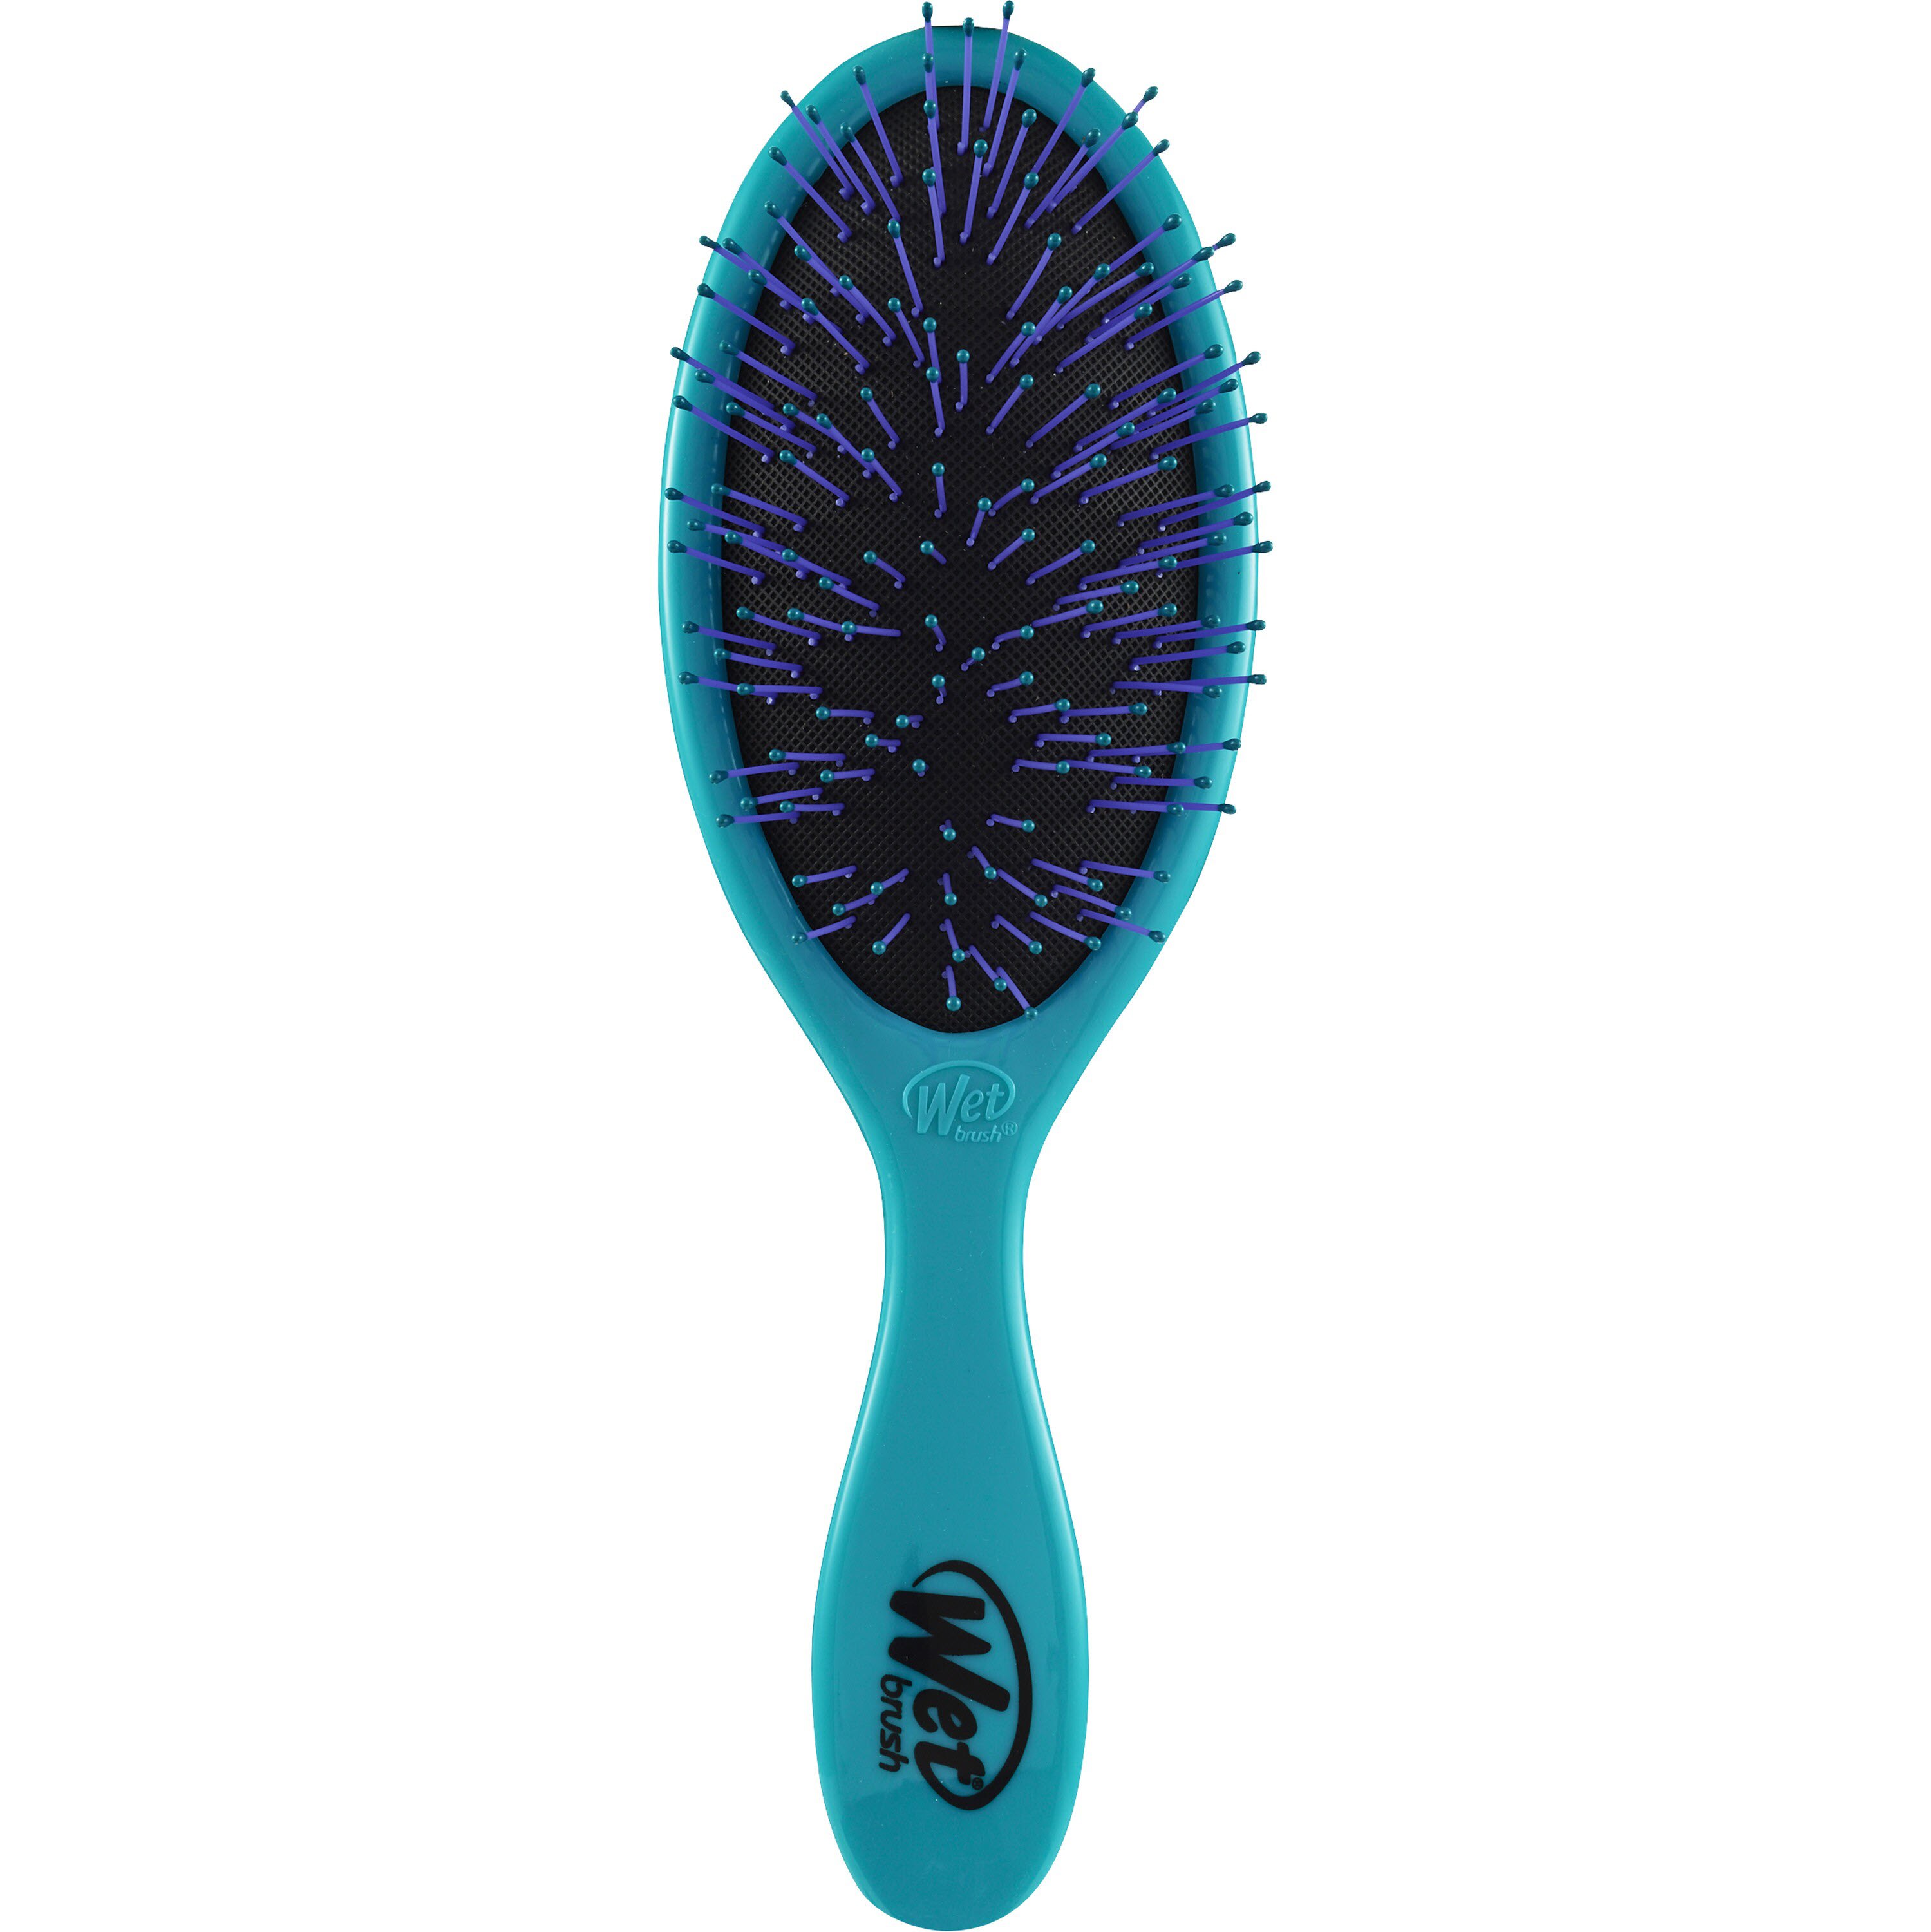 Wet Brush Custom Care Detangler Thick Brush, Assorted Colors